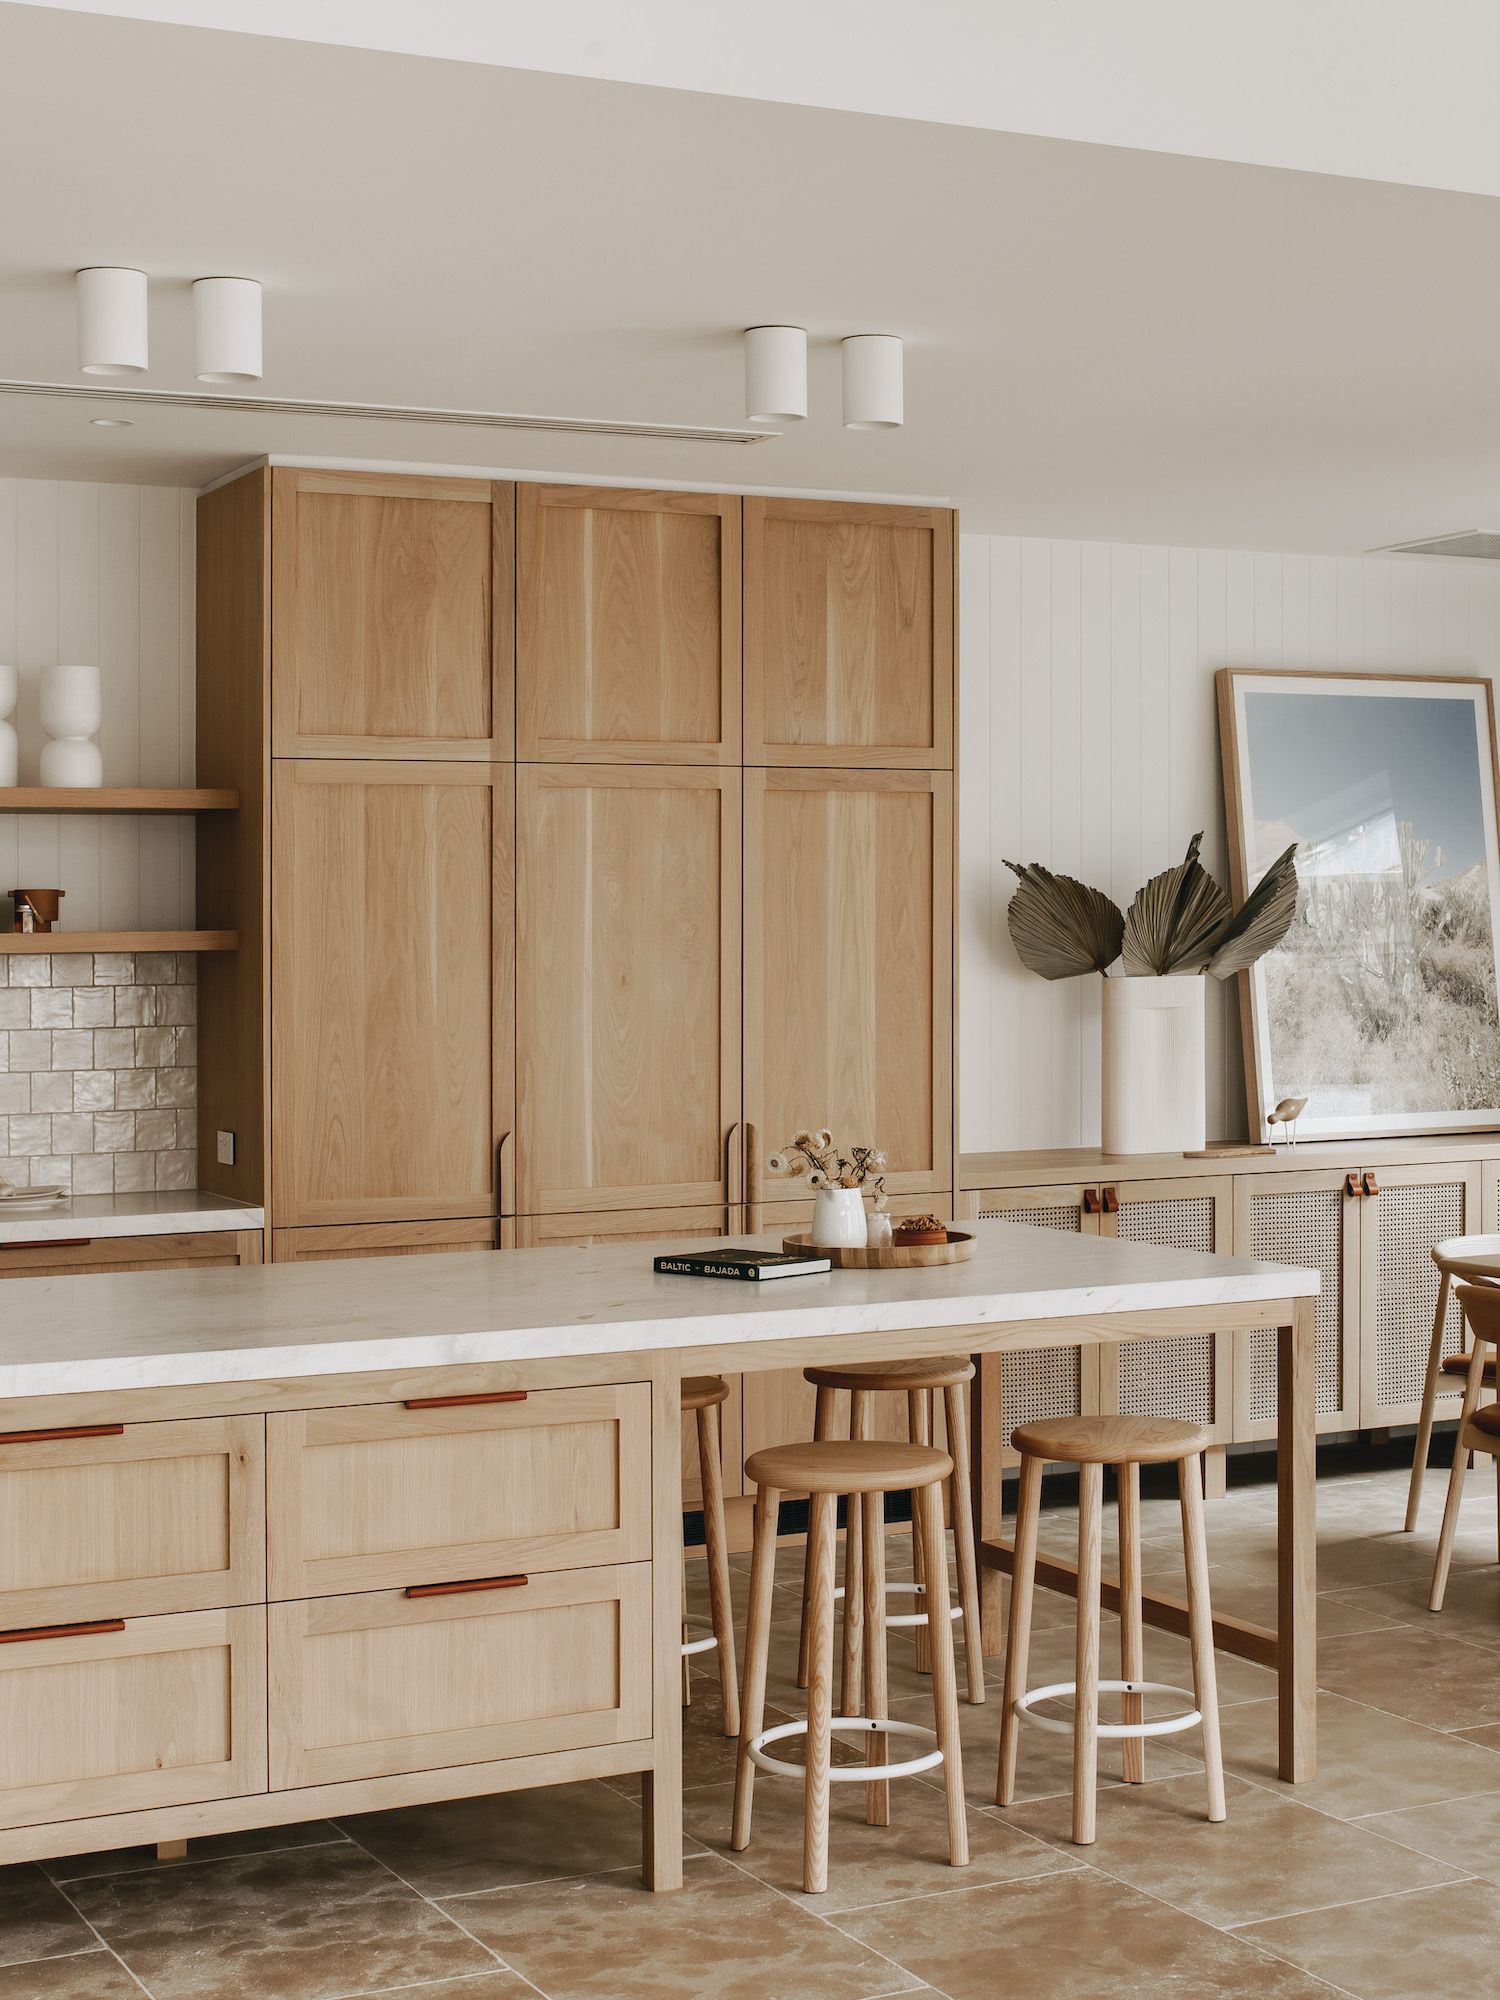 Beautiful Oak kitchen cabinets